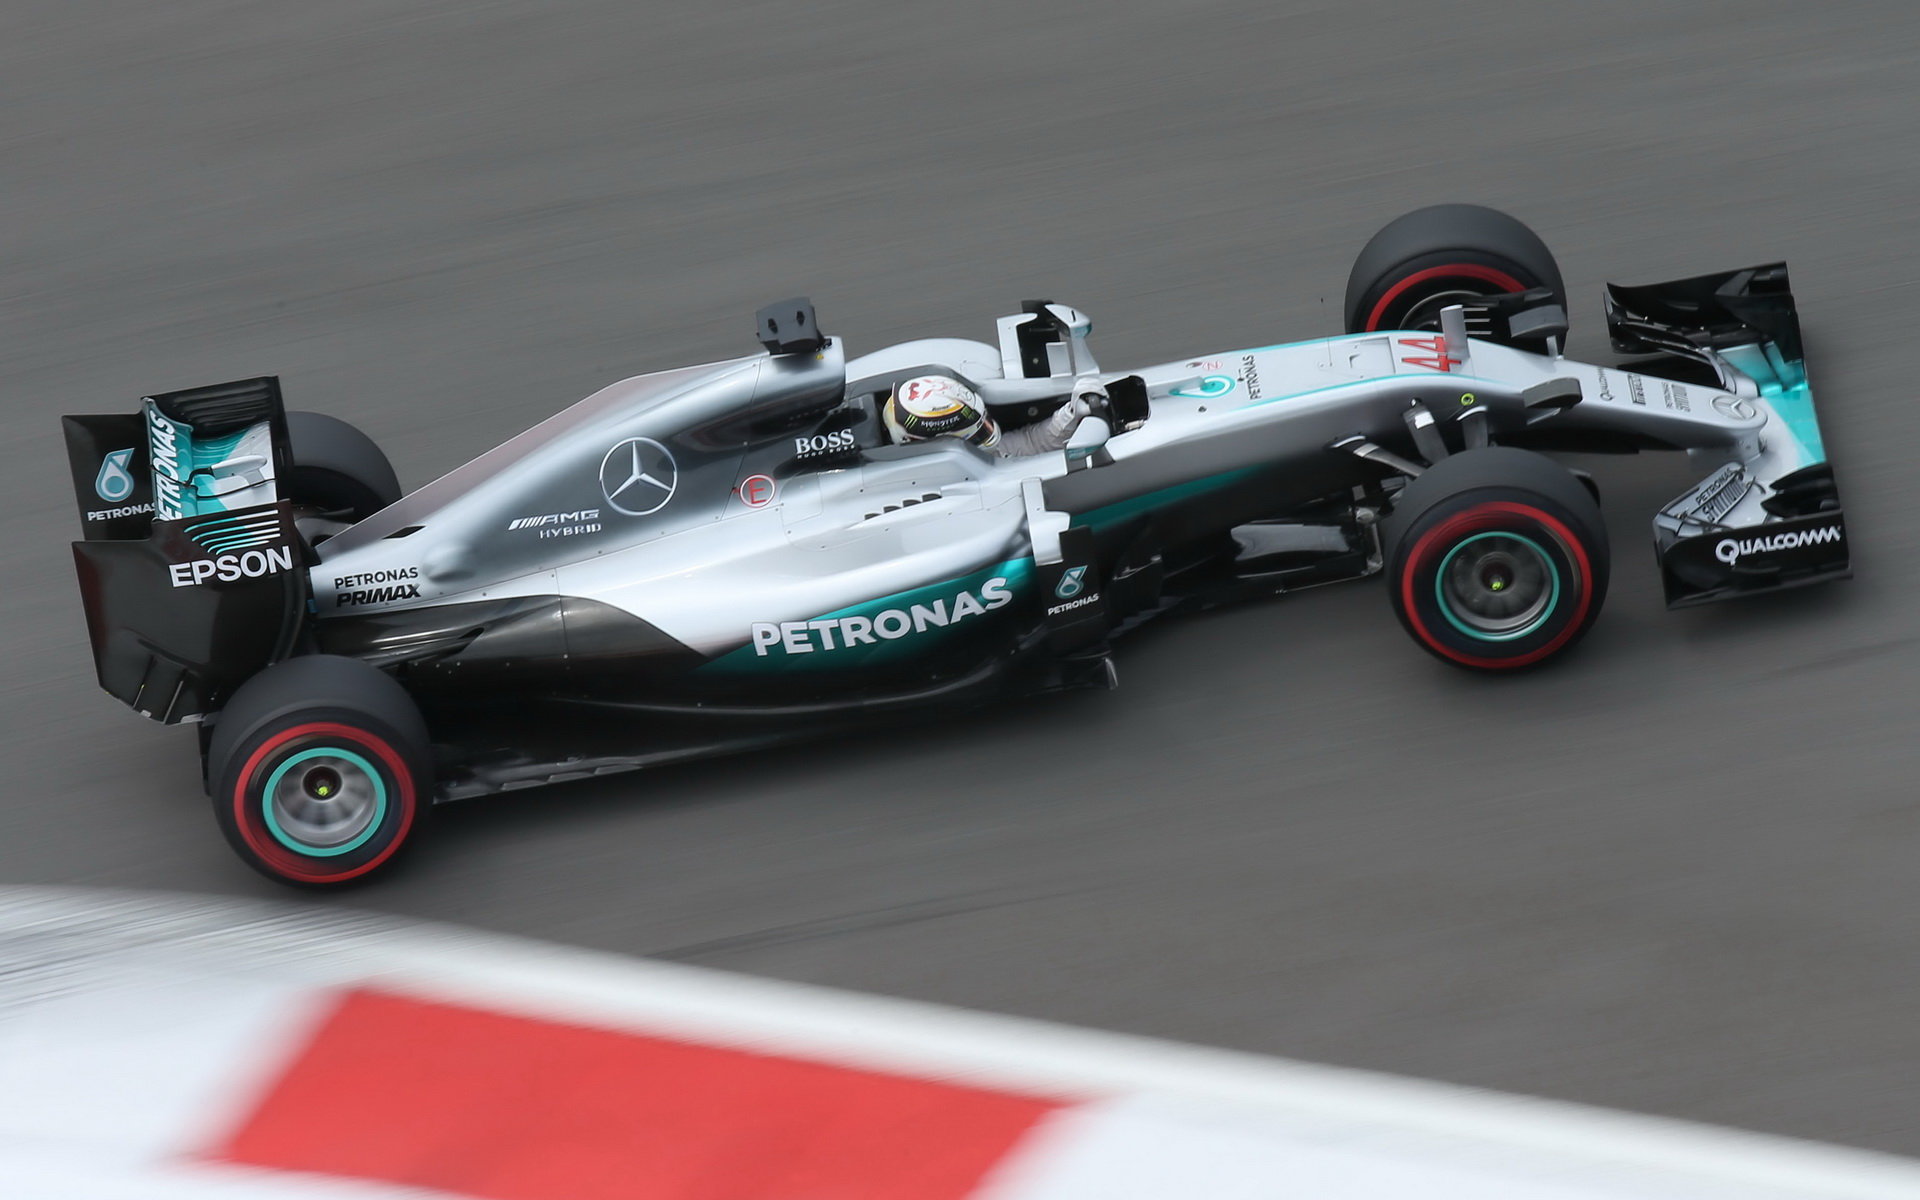 Lewis Hamilton při kvalifikaci v Soči